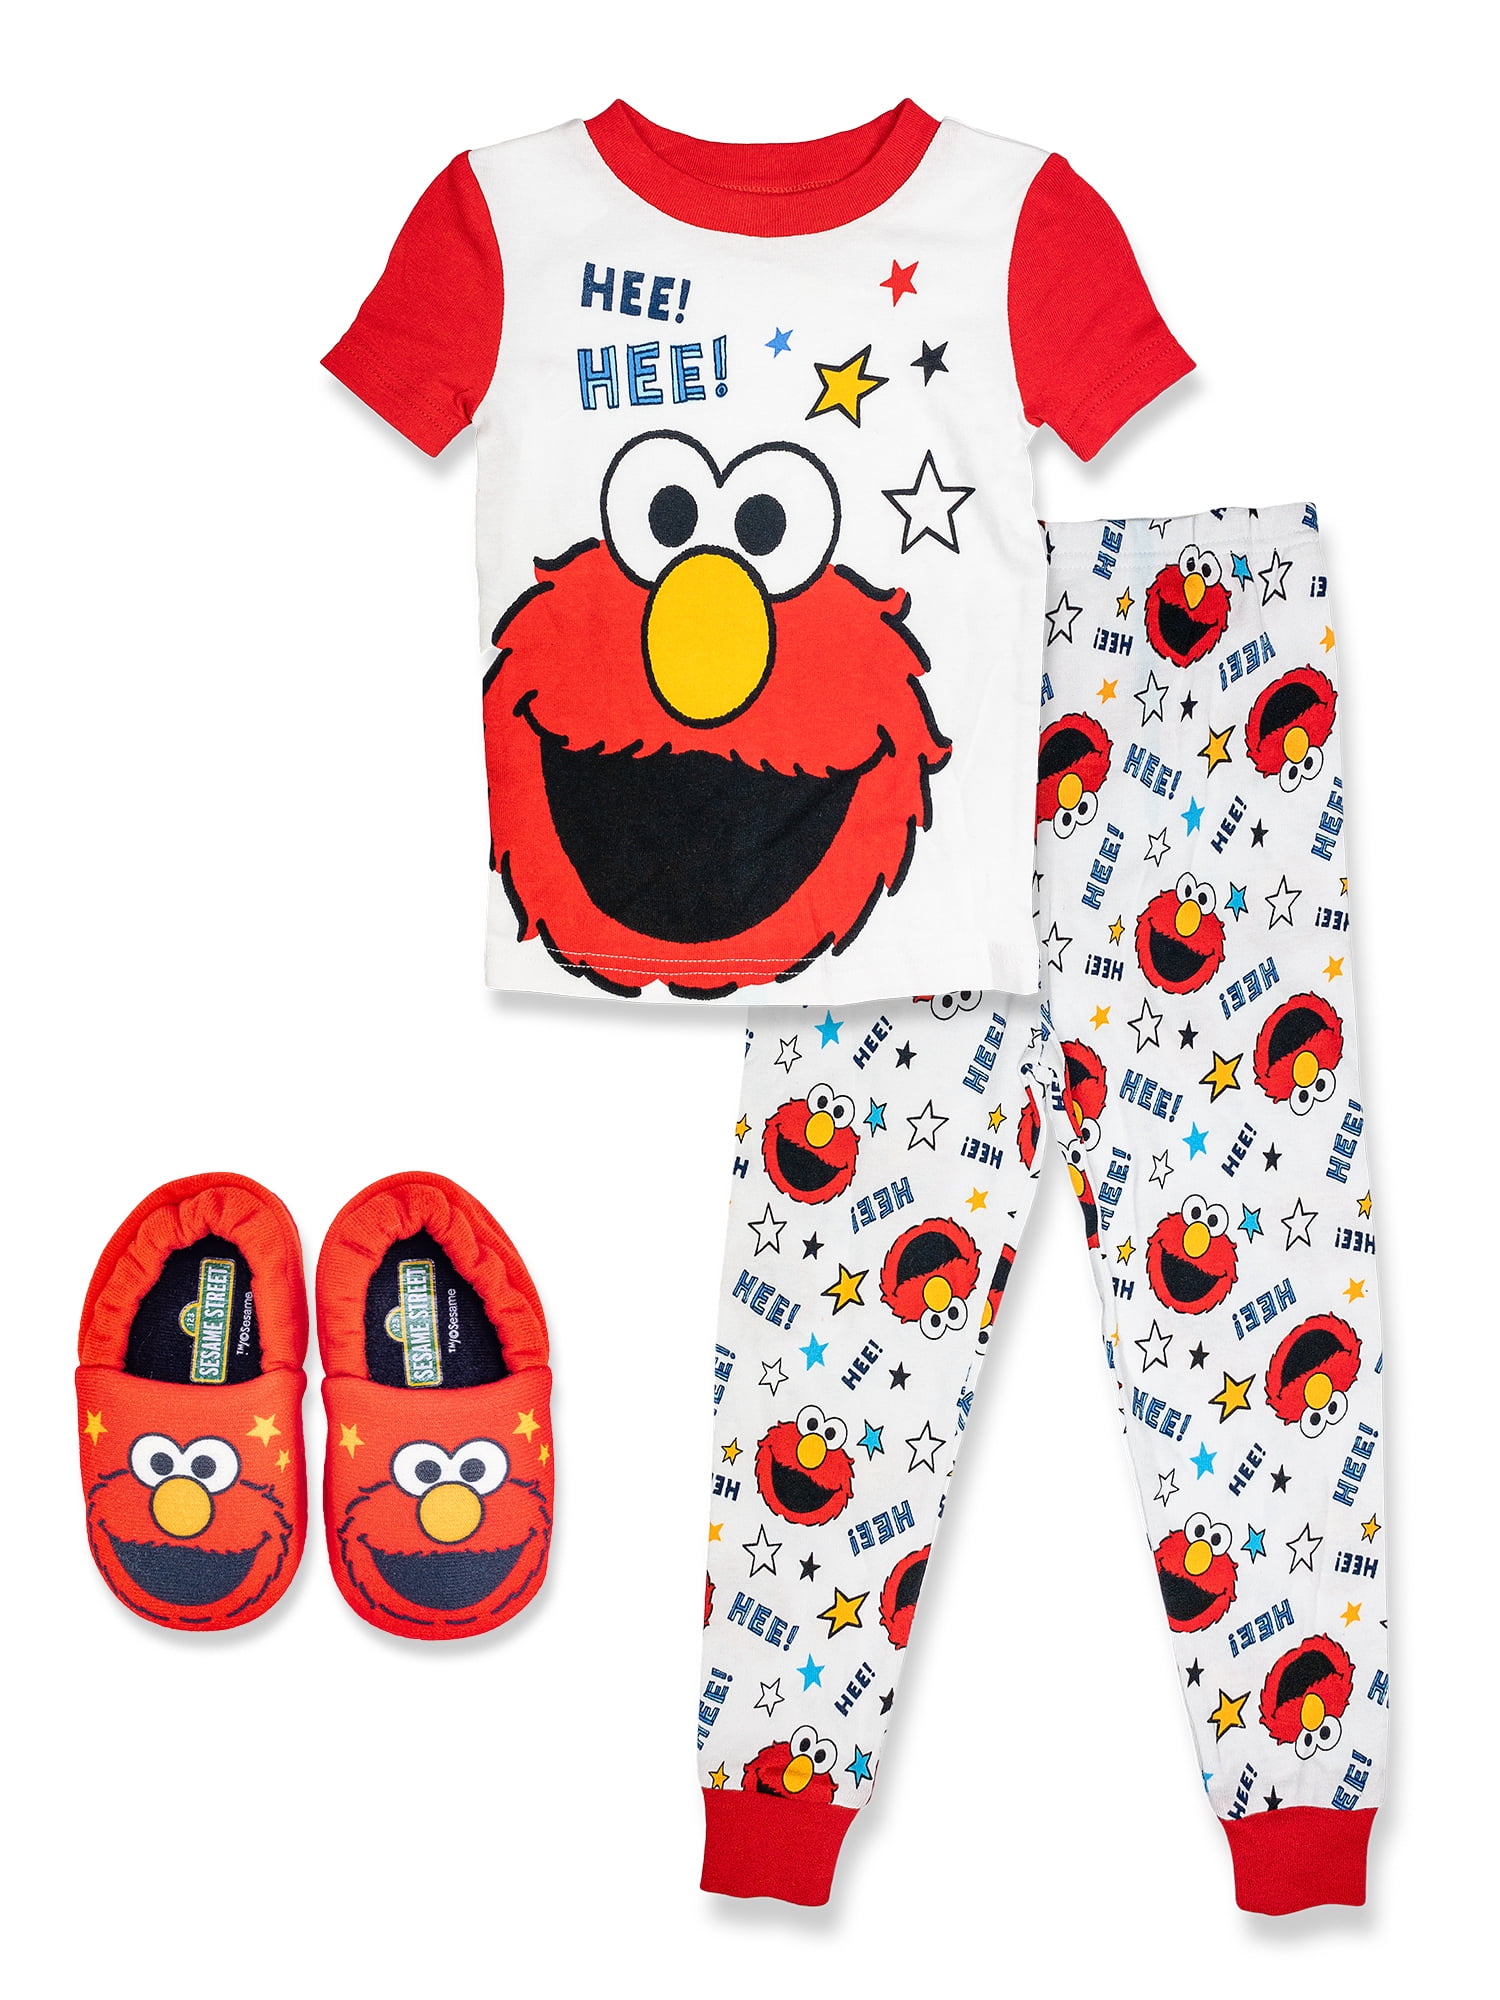 Elmo Pajamas 2 pcs Set Baby Toddler Kid's Boys Girls Sleepwear Sesame Street 